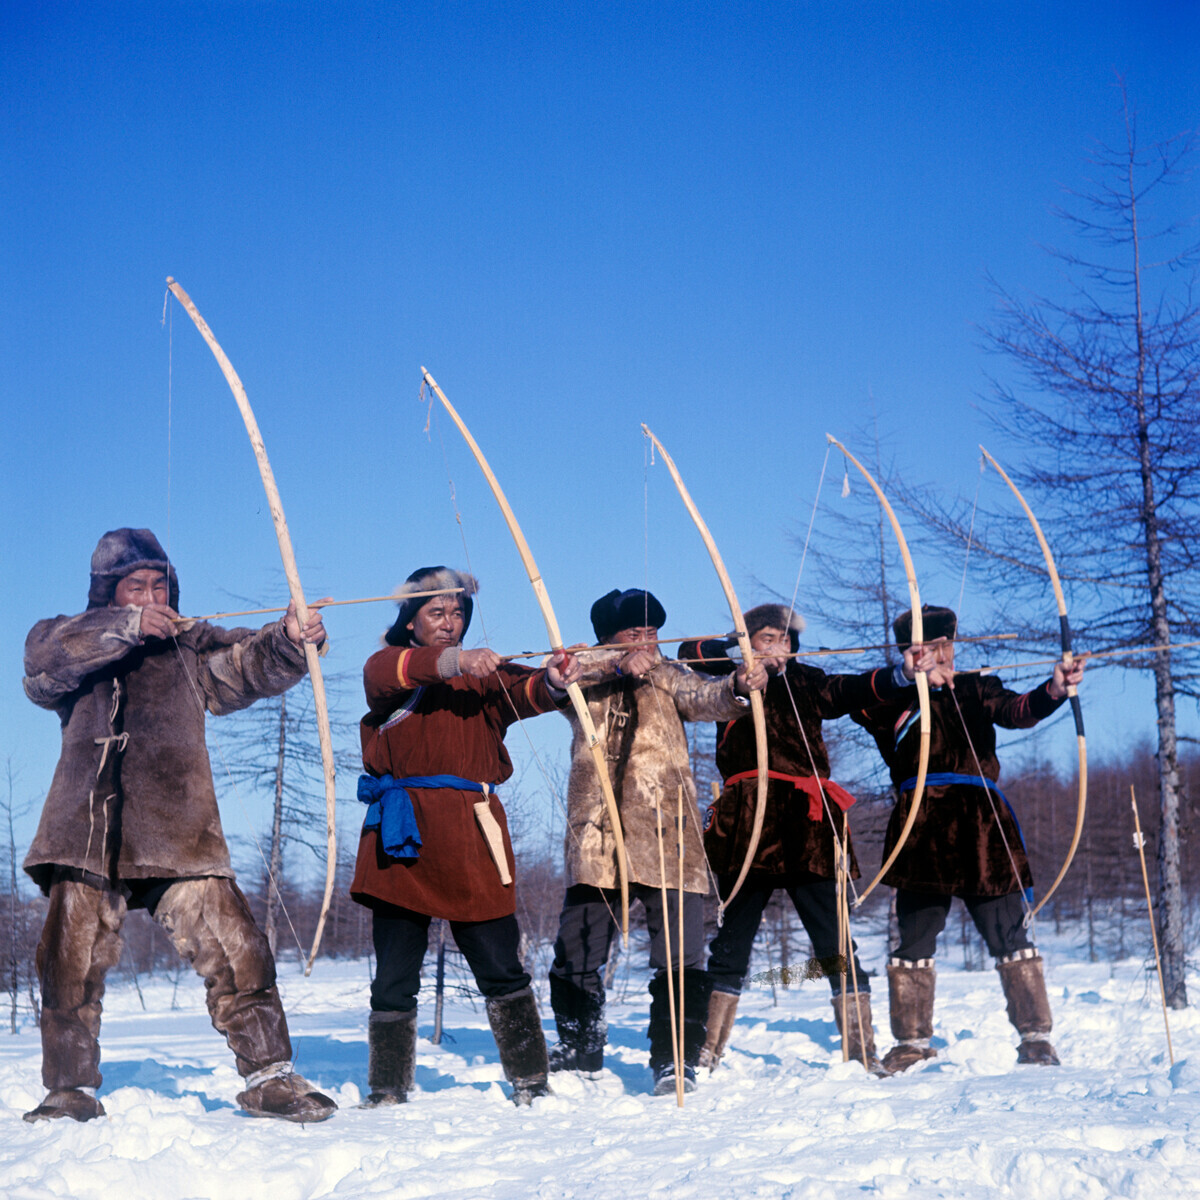 Competição de arco e flecha entre os nivkhs, 1970, Sacalina
